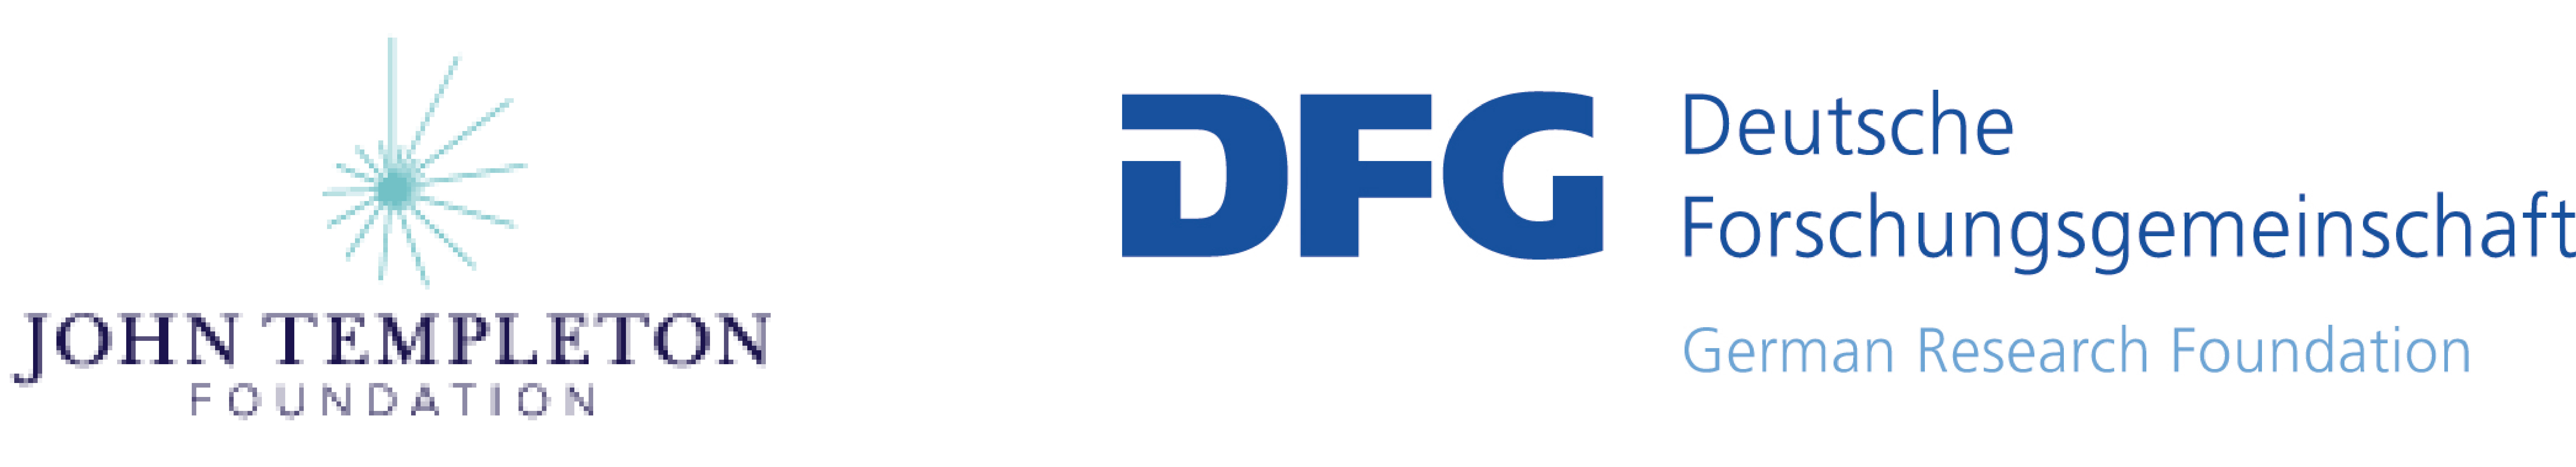 Logos JTF DFG